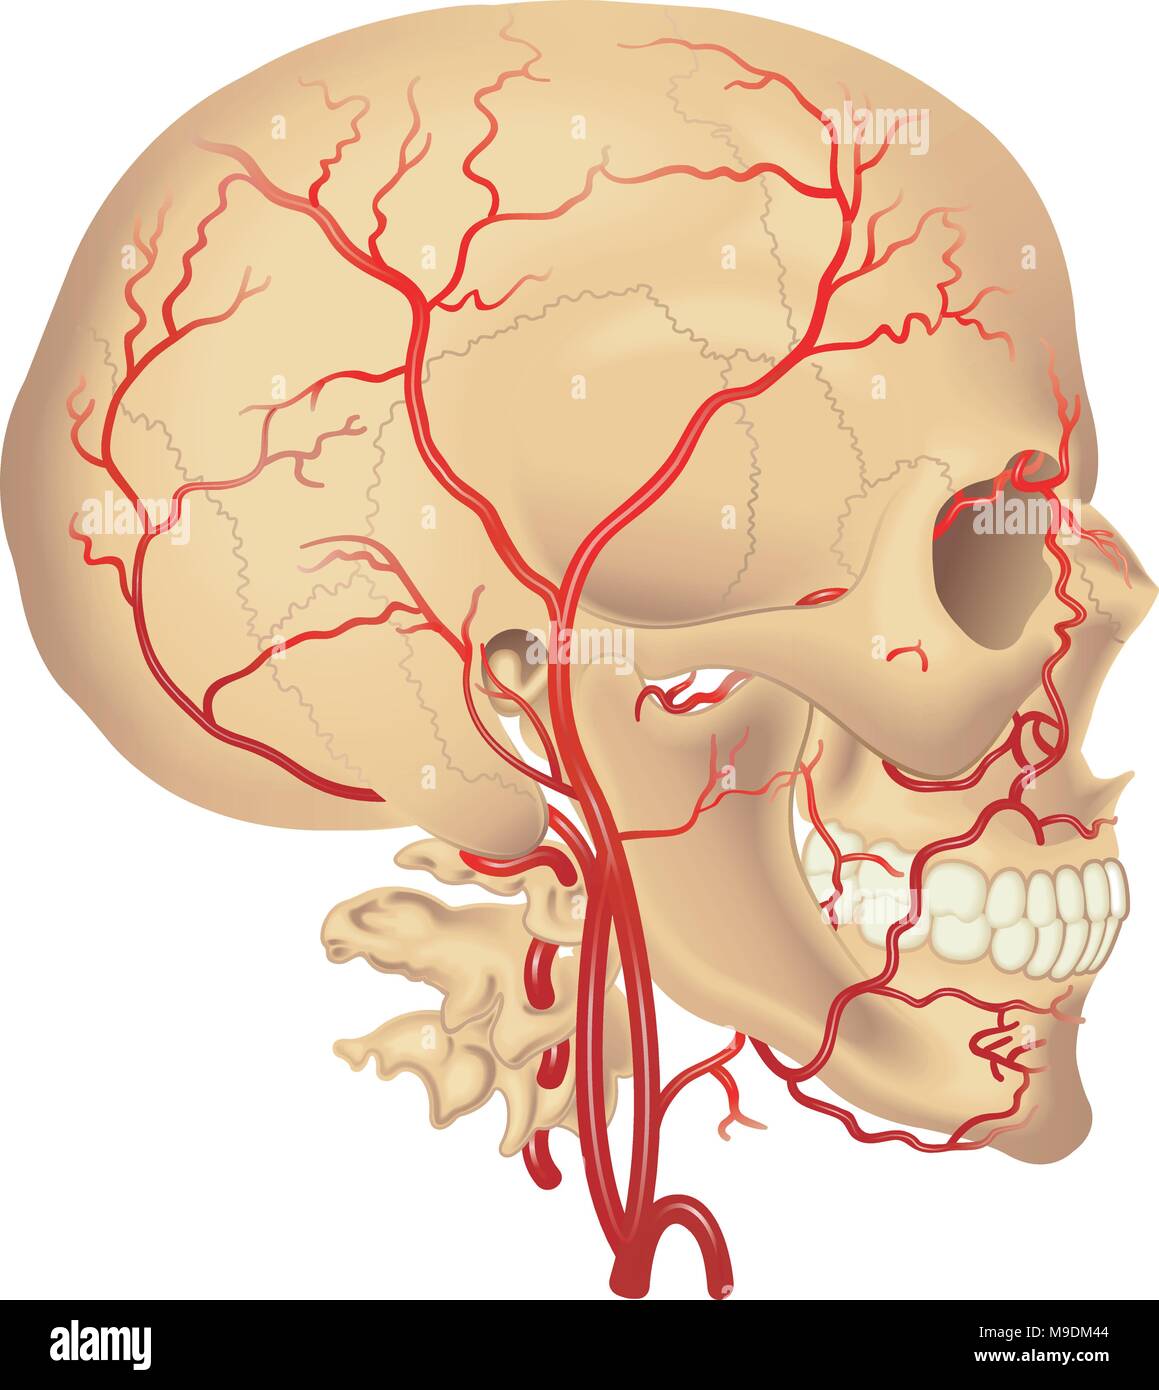 Vettore Illustrazione medica della distribuzione dell'arteria carotidea Illustrazione Vettoriale